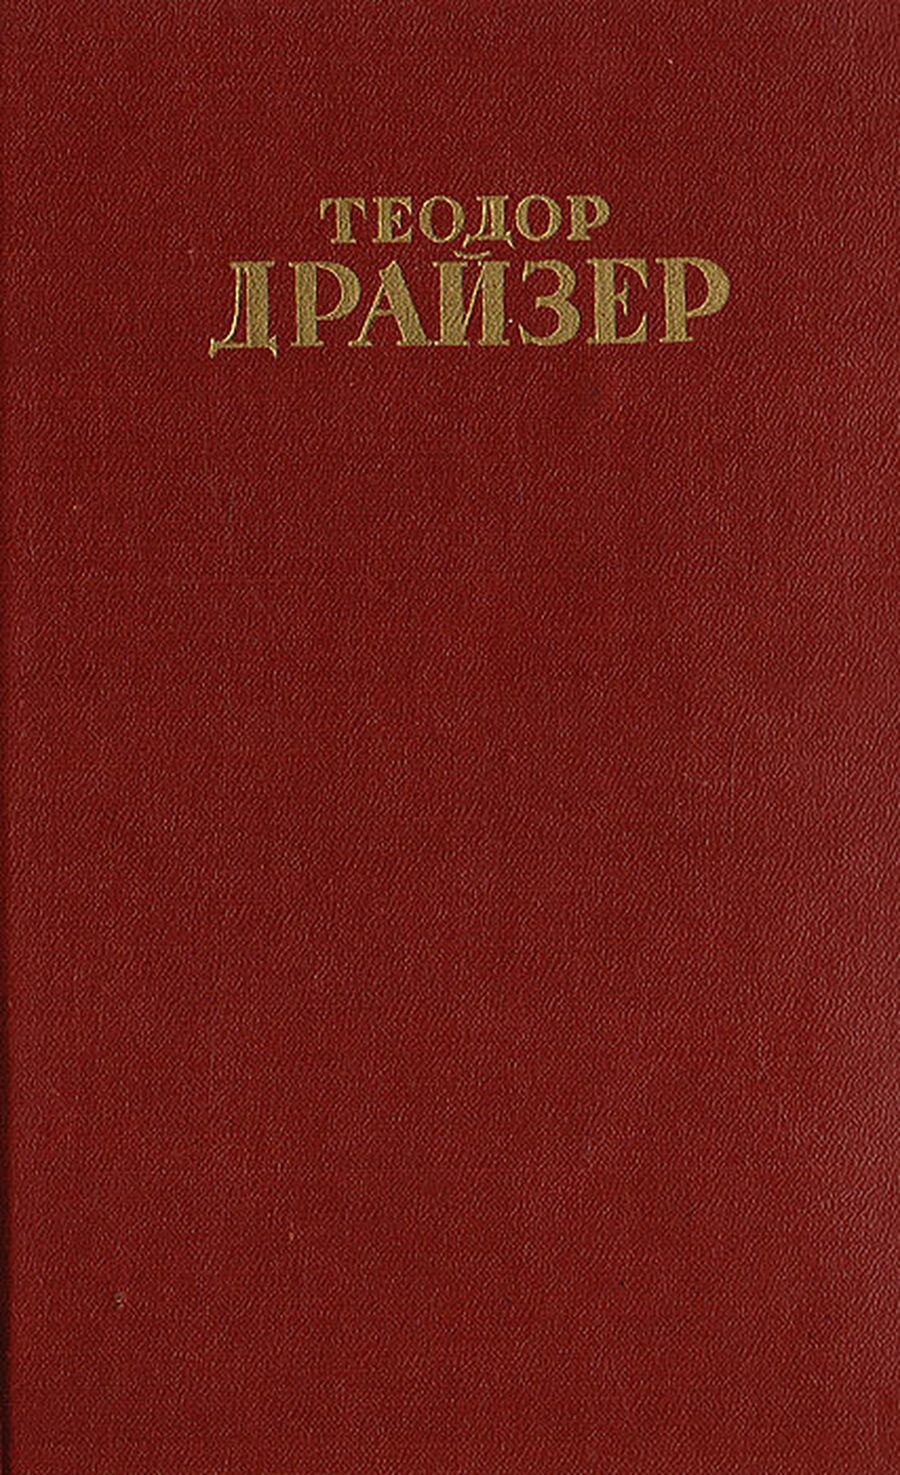 Теодор Драйзер. Собрание сочинений в 12 томах. Том 8